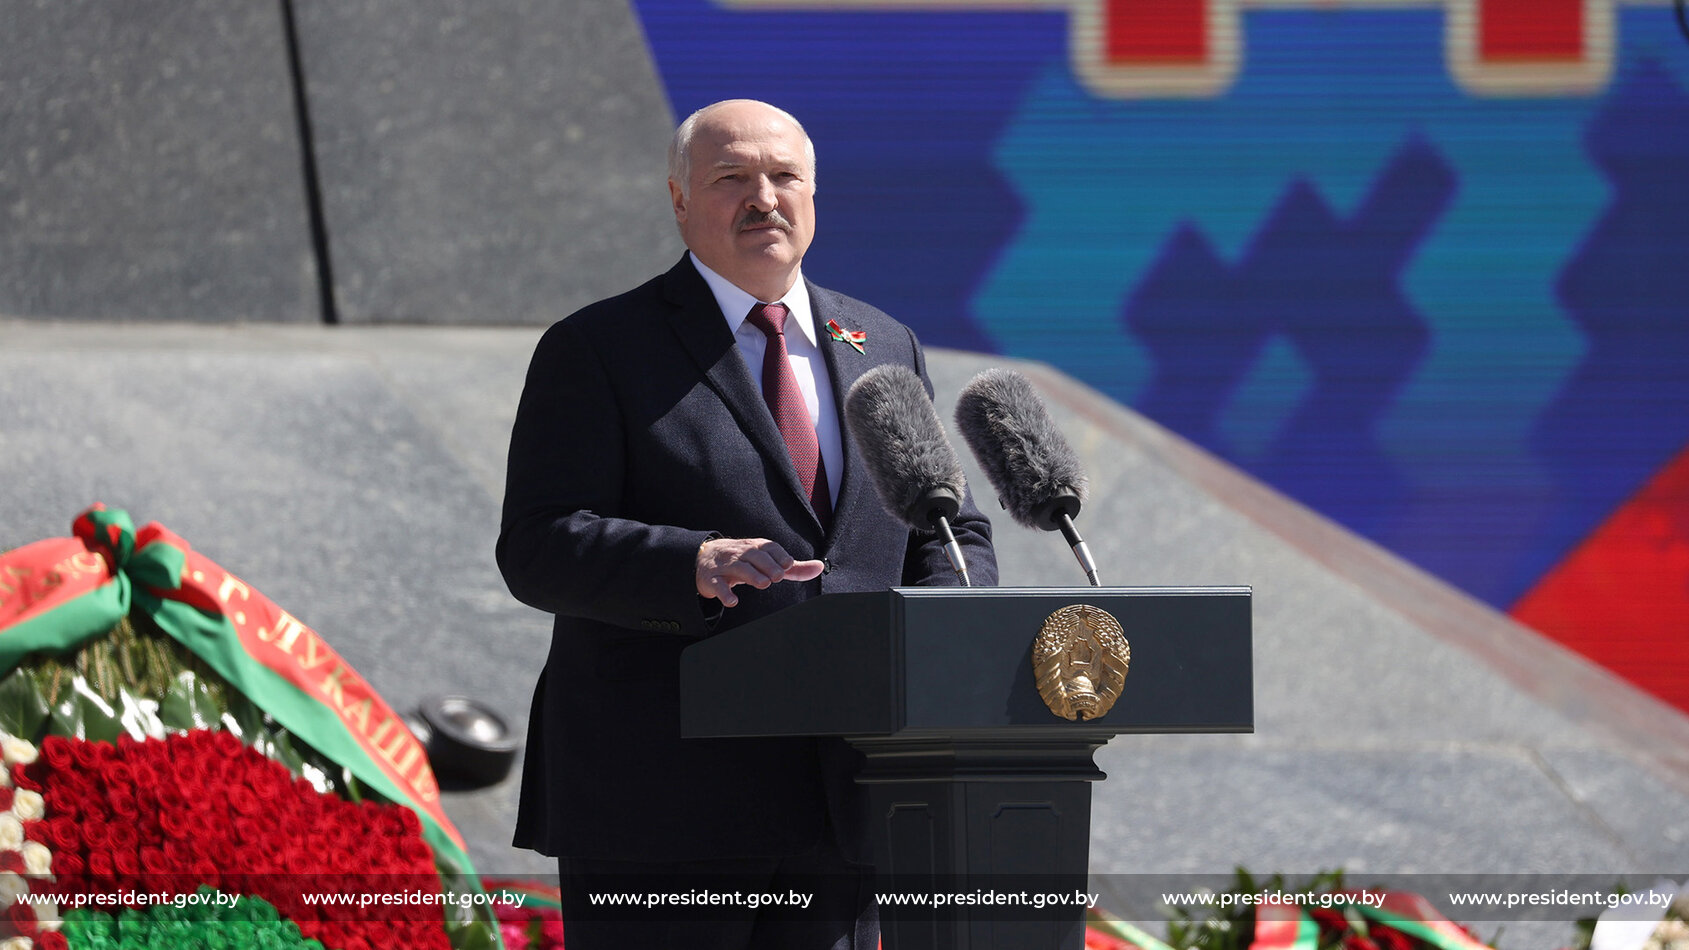 Лукашенко пообещал "обломать рога" Польше в случае агрессивных действий против Белоруссии